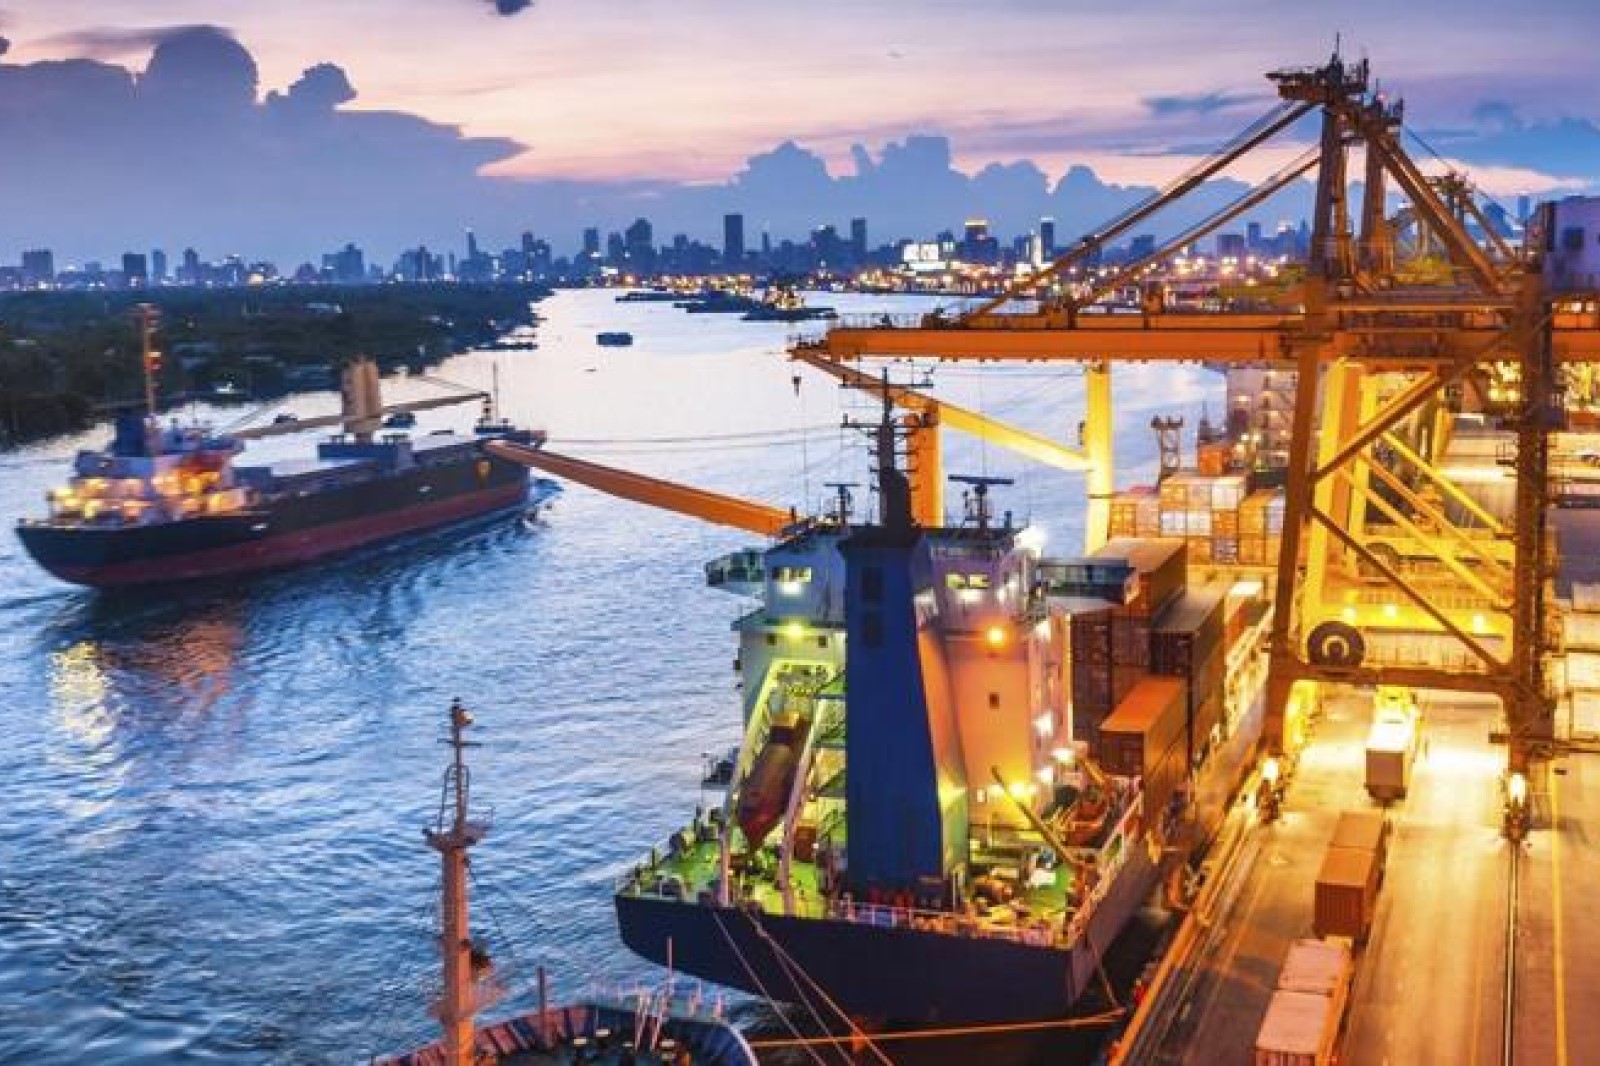 Nâng cấp chất lượng xuất khẩu và tính bền vững môi trường: Bằng chứng từ khu vực Đông Á và Thái Bình Dương